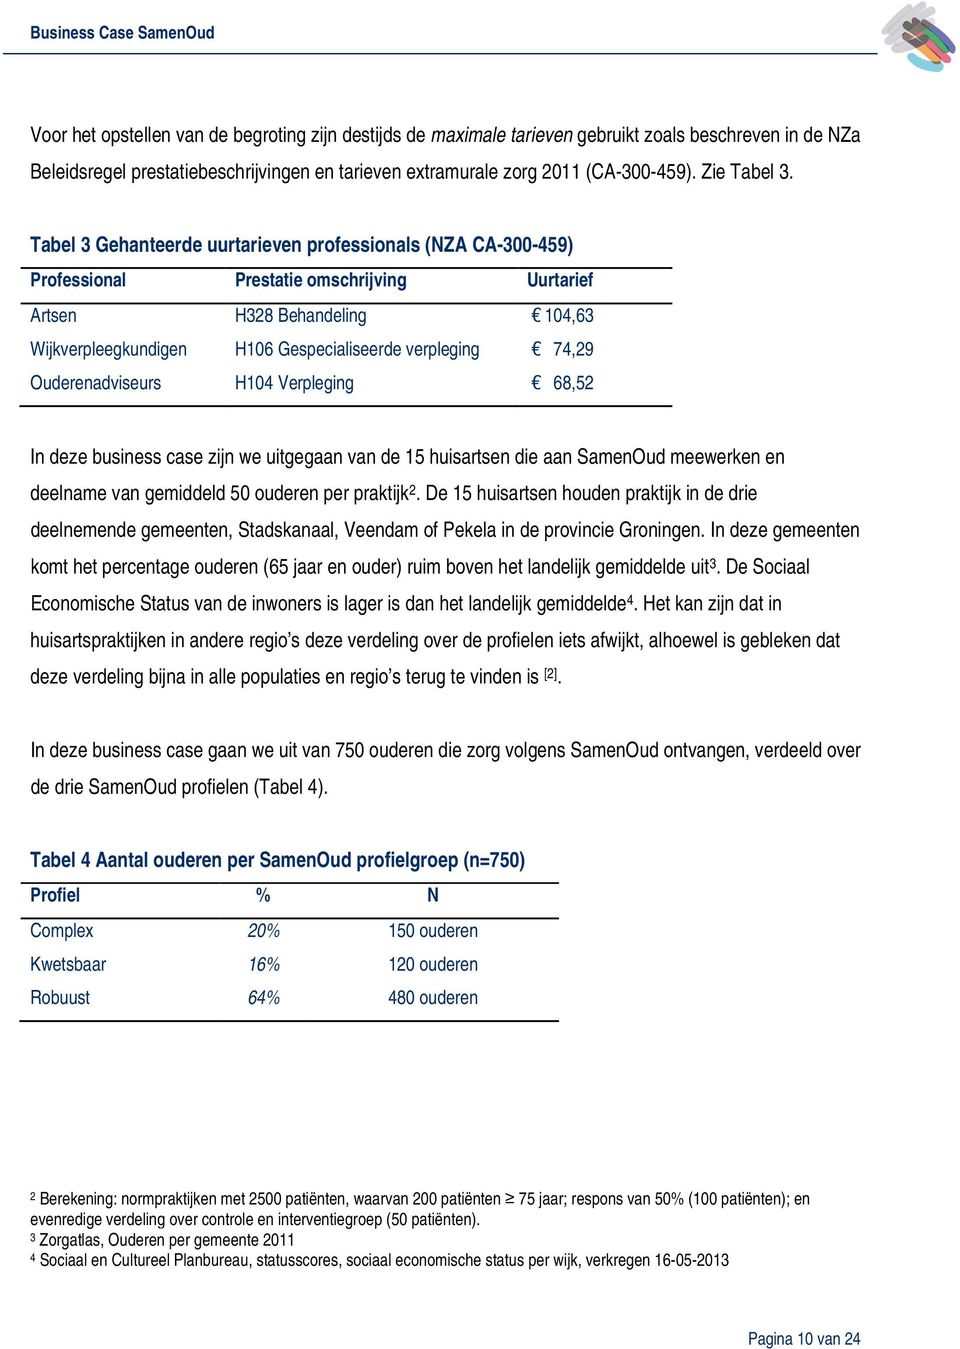 Tabel 3 Gehanteerde uurtarieven professionals (NZA CA-300-459) Professional Prestatie omschrijving Uurtarief Artsen H328 Behandeling 104,63 Wijkverpleegkundigen H106 Gespecialiseerde verpleging 74,29